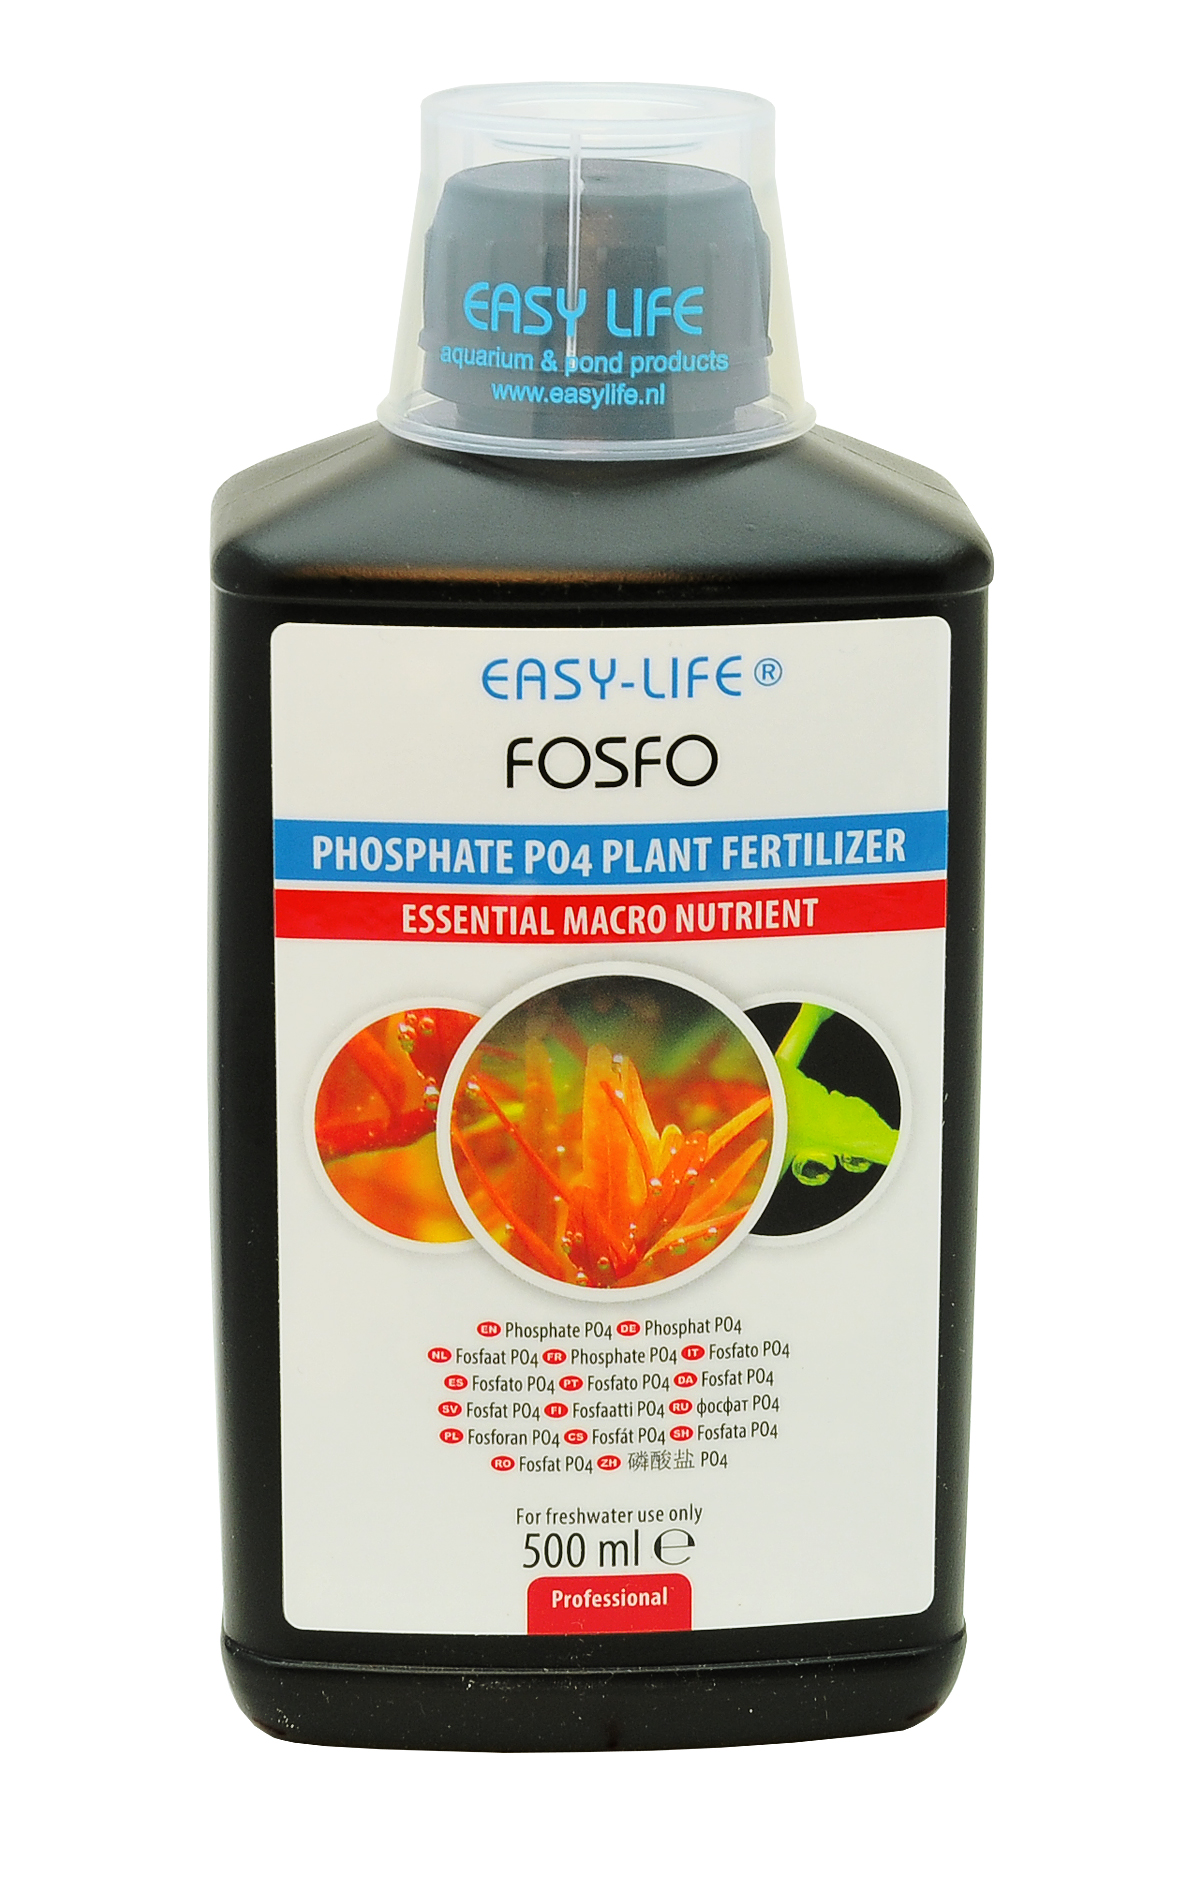 EASY-LIFE Fosfo 500ml pour le contrôle de la teneur en PO4 dans les aquariums plantés